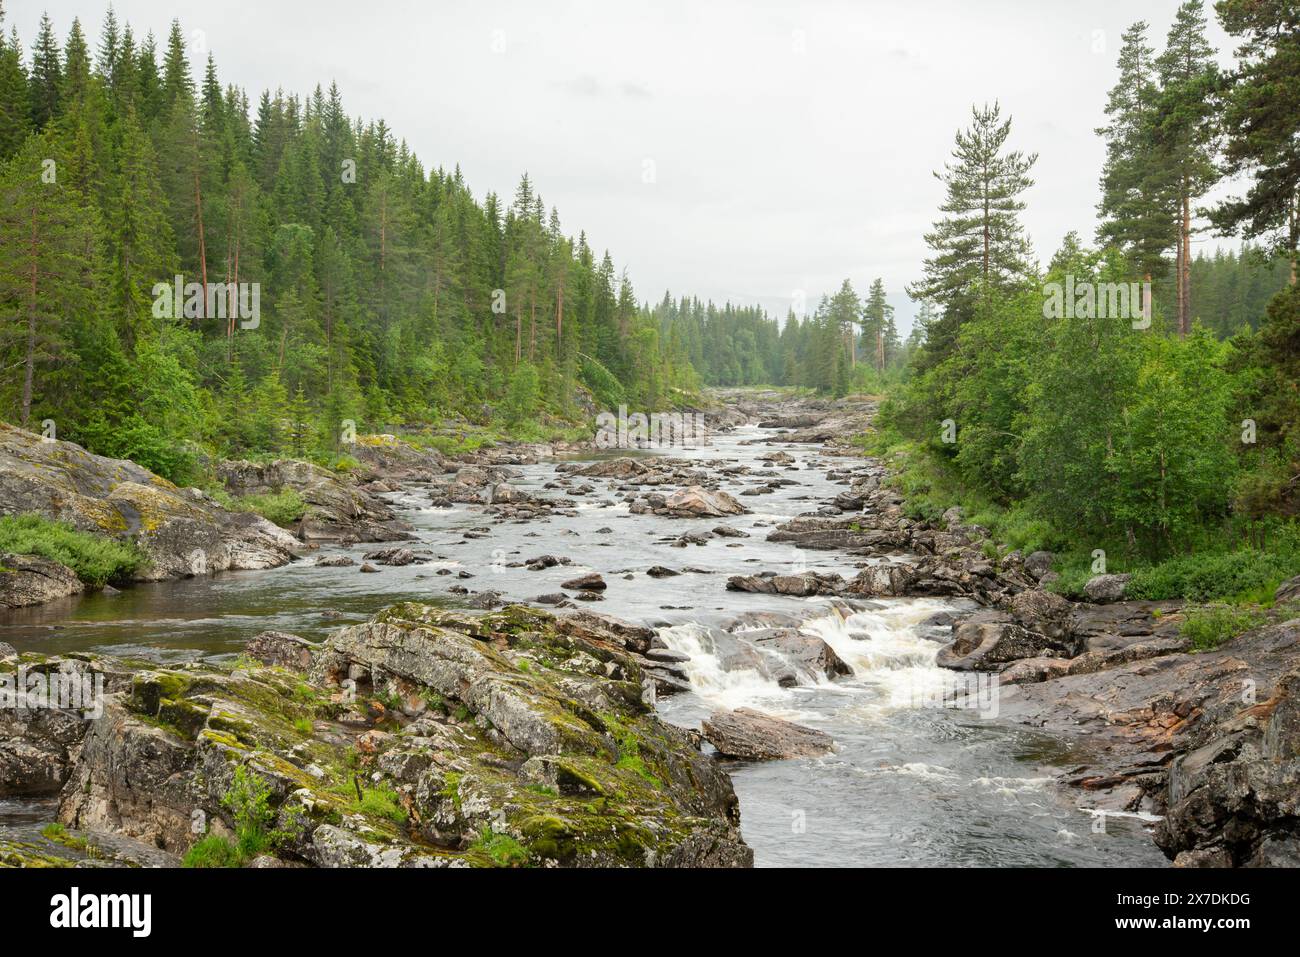 Wunderschöne Landschaft mit norwegischem felsigen Bergfluss mit Stromschnellen, wo das Wasser weißen Schaum bildet. Wasserfall im Fluss. Grüne Nadelbäume t Stockfoto